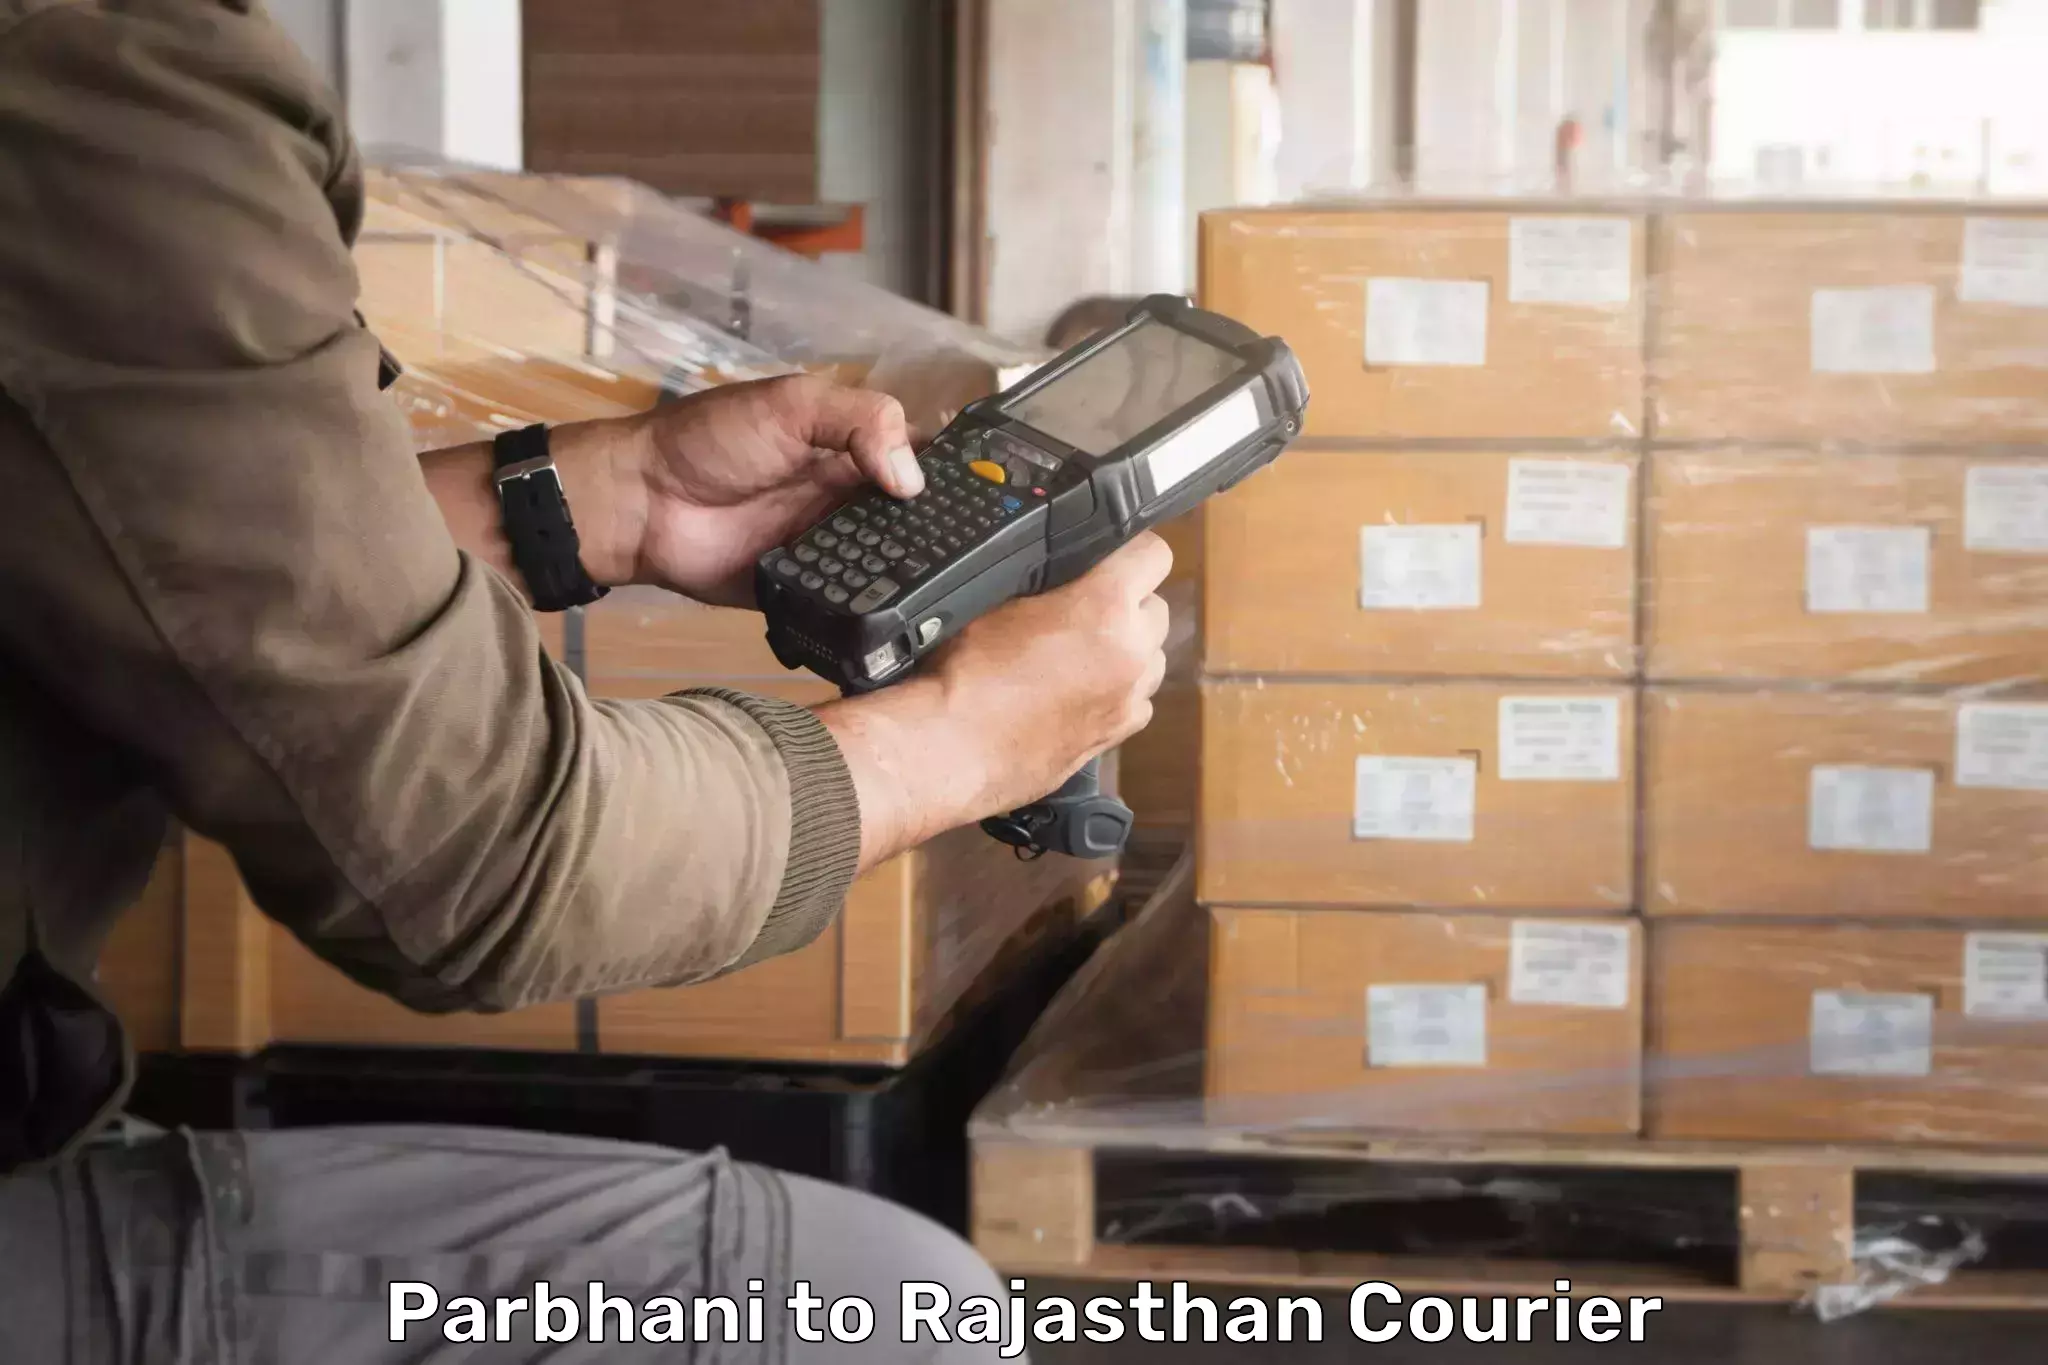 Customer-centric shipping Parbhani to Sagwara